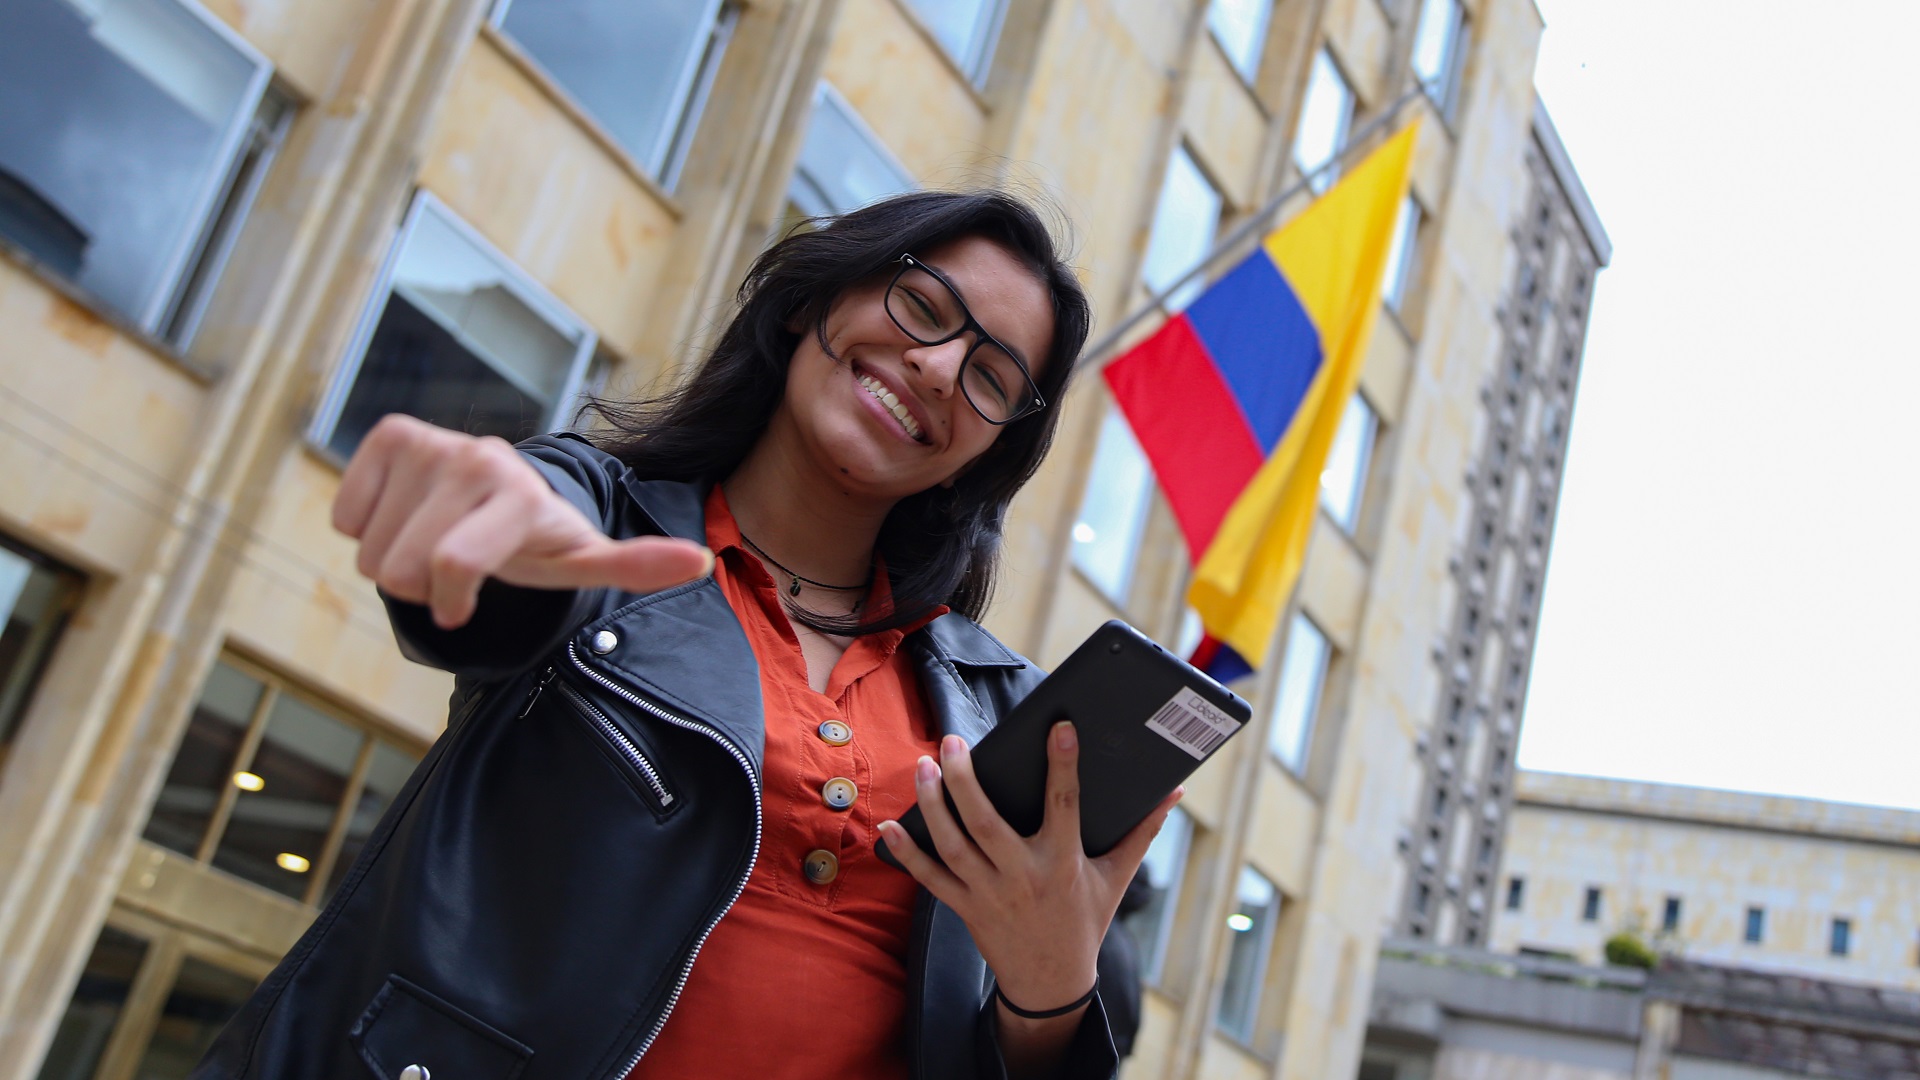 Fotografía: Mujer con celular en la mano y bandera de Colombia en la parte de atrás.